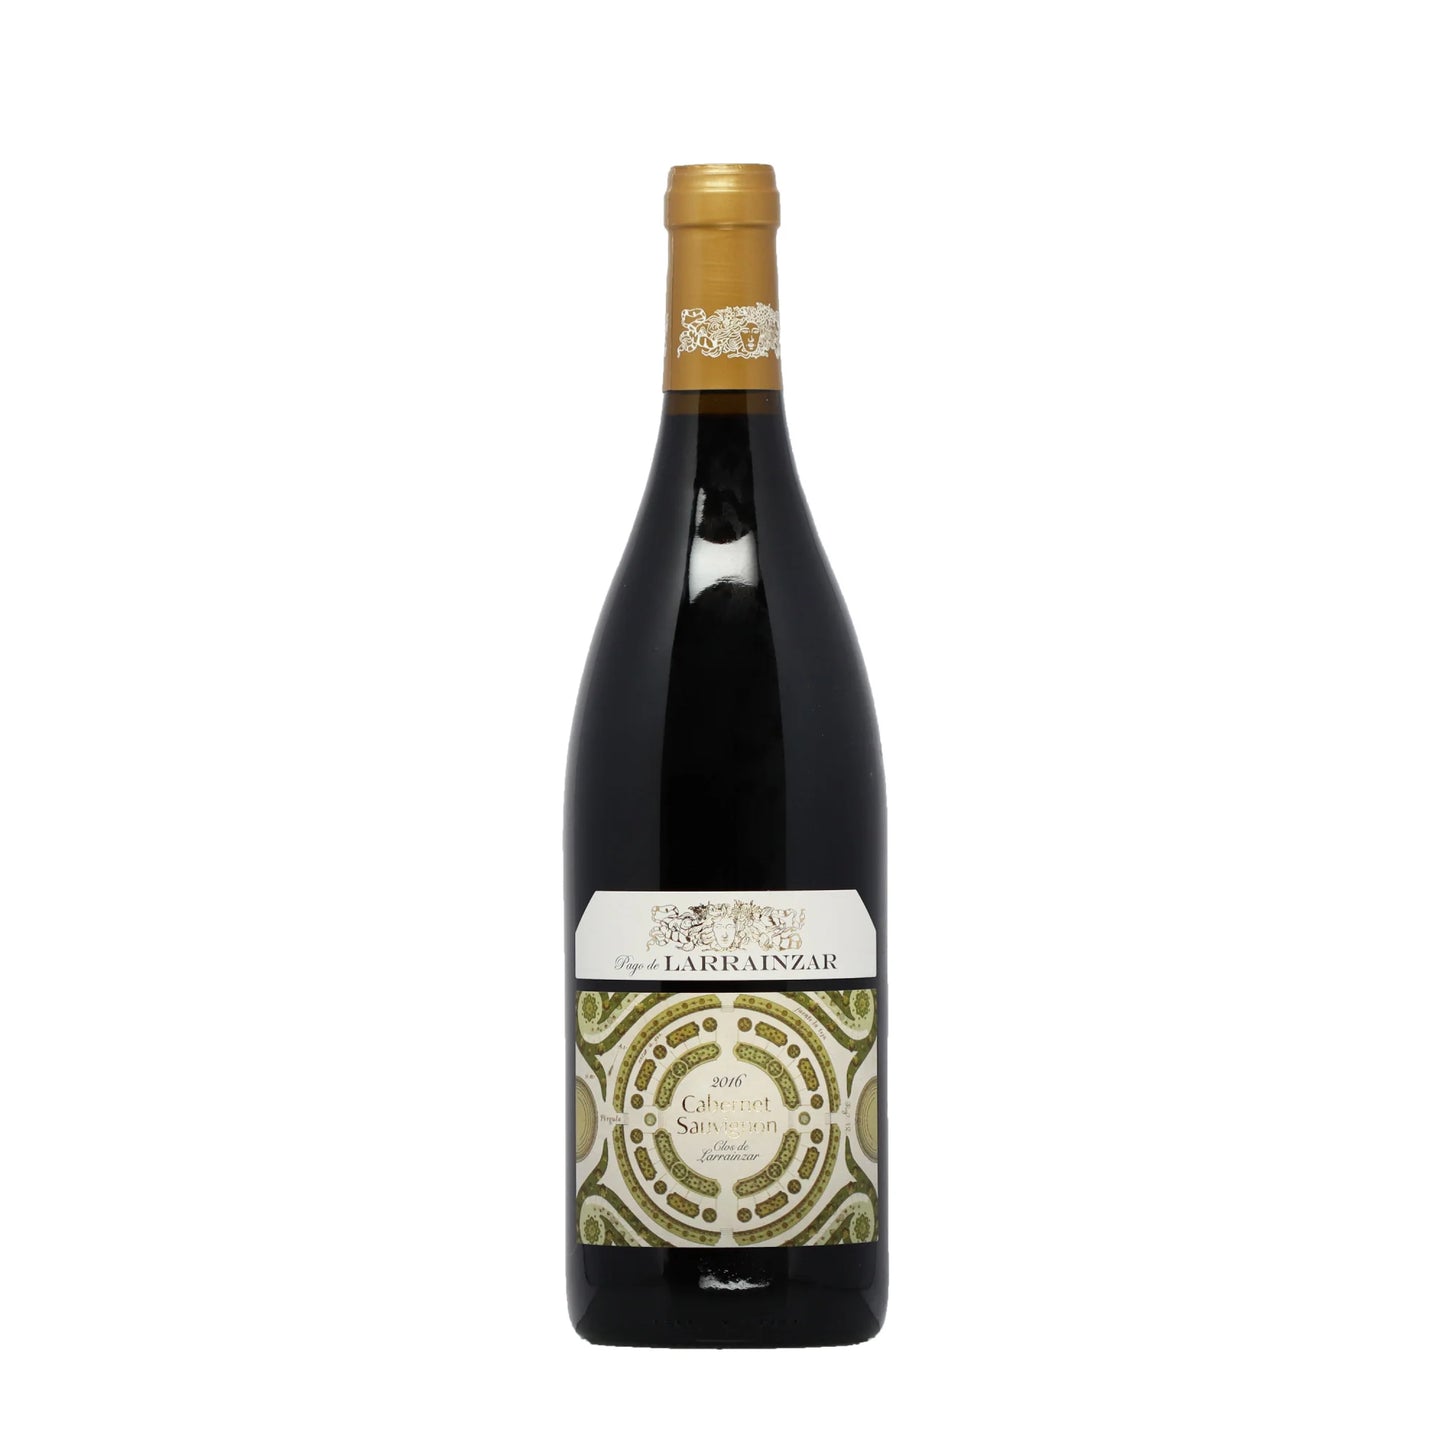 Cabernet Sauvignon 2016 - Limitierte Edition Pago de Larrainzar Rotwein - Spanien - Wein